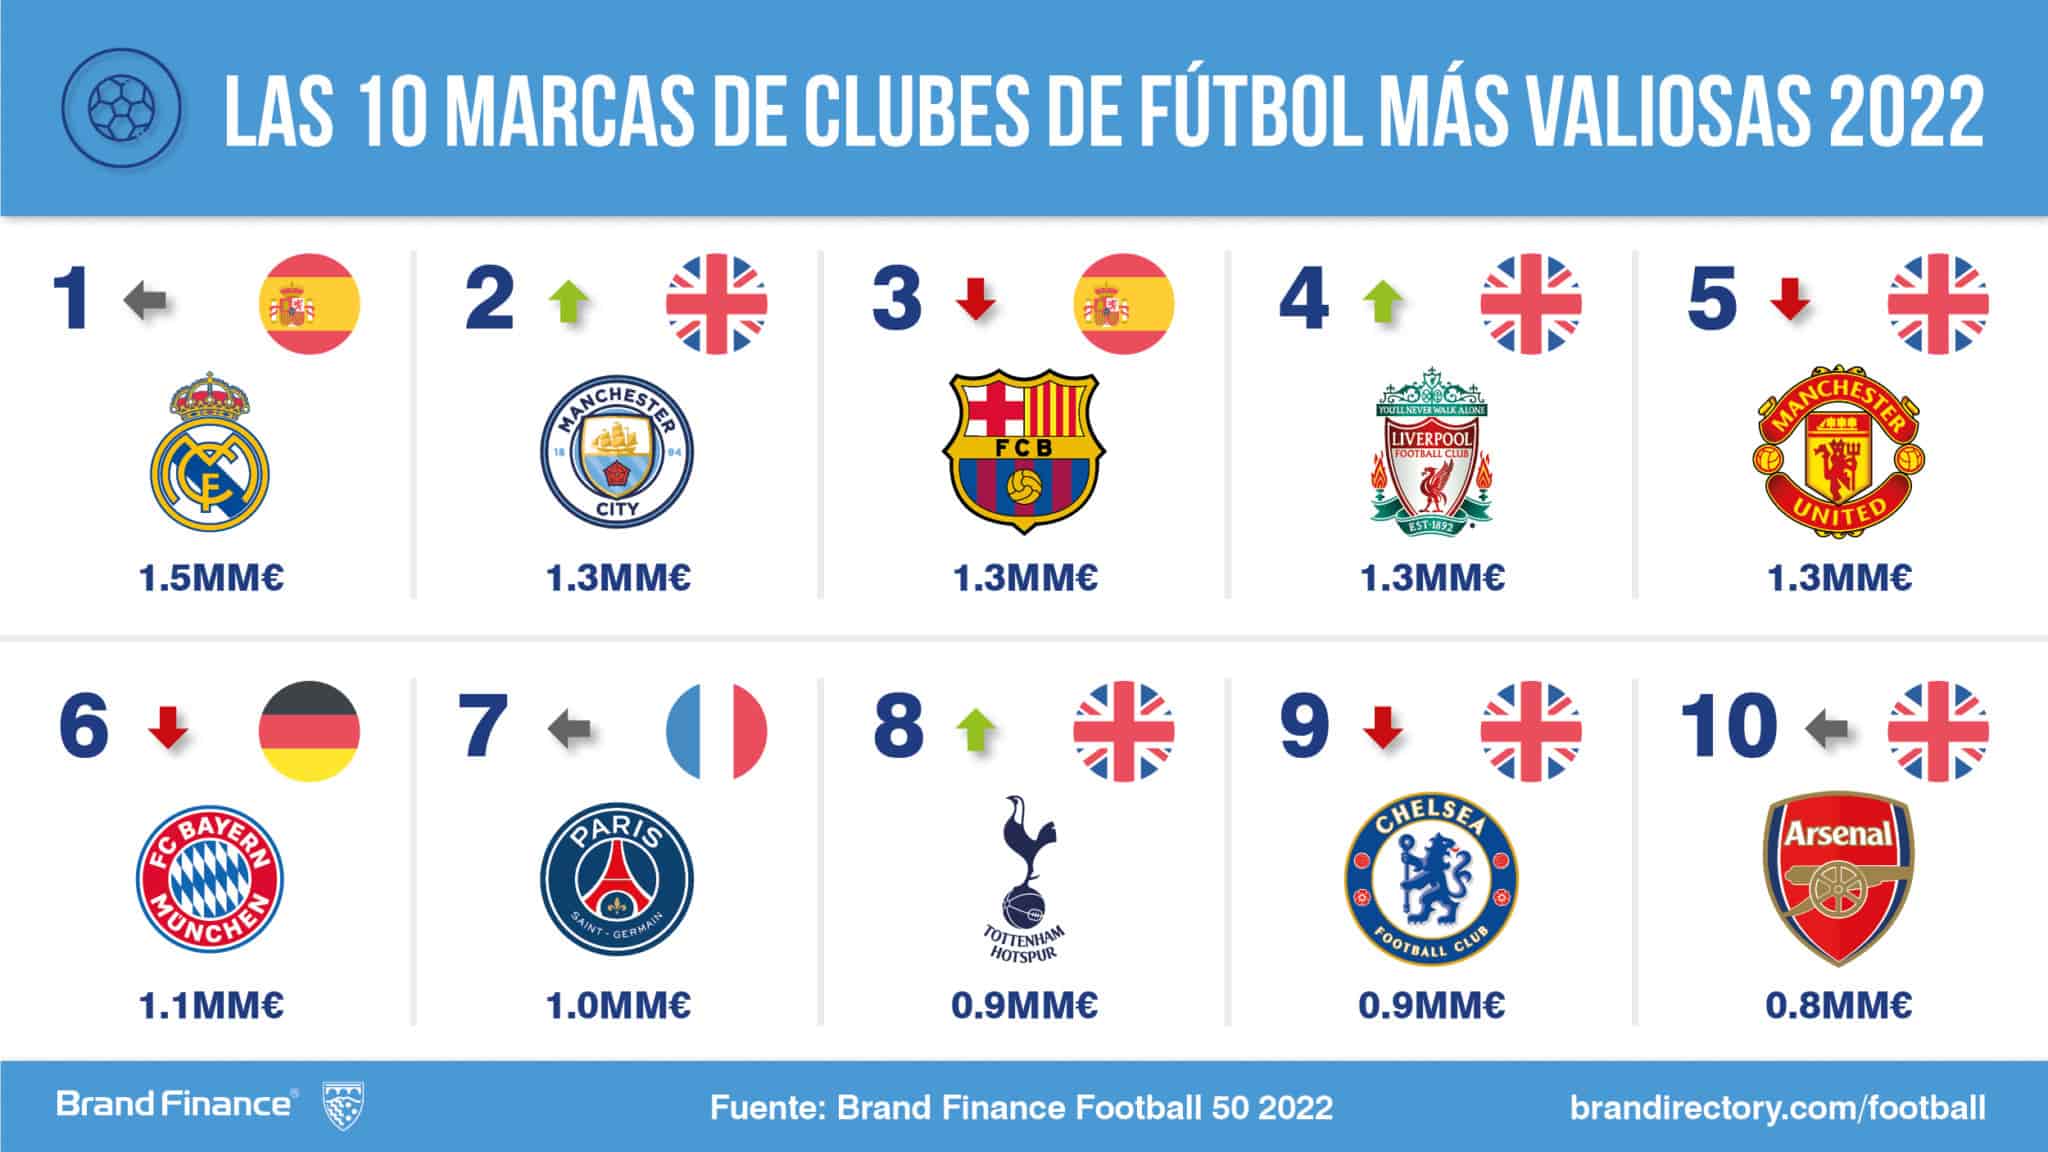 Las 10 marcas de clubes de fútbol más valiosas